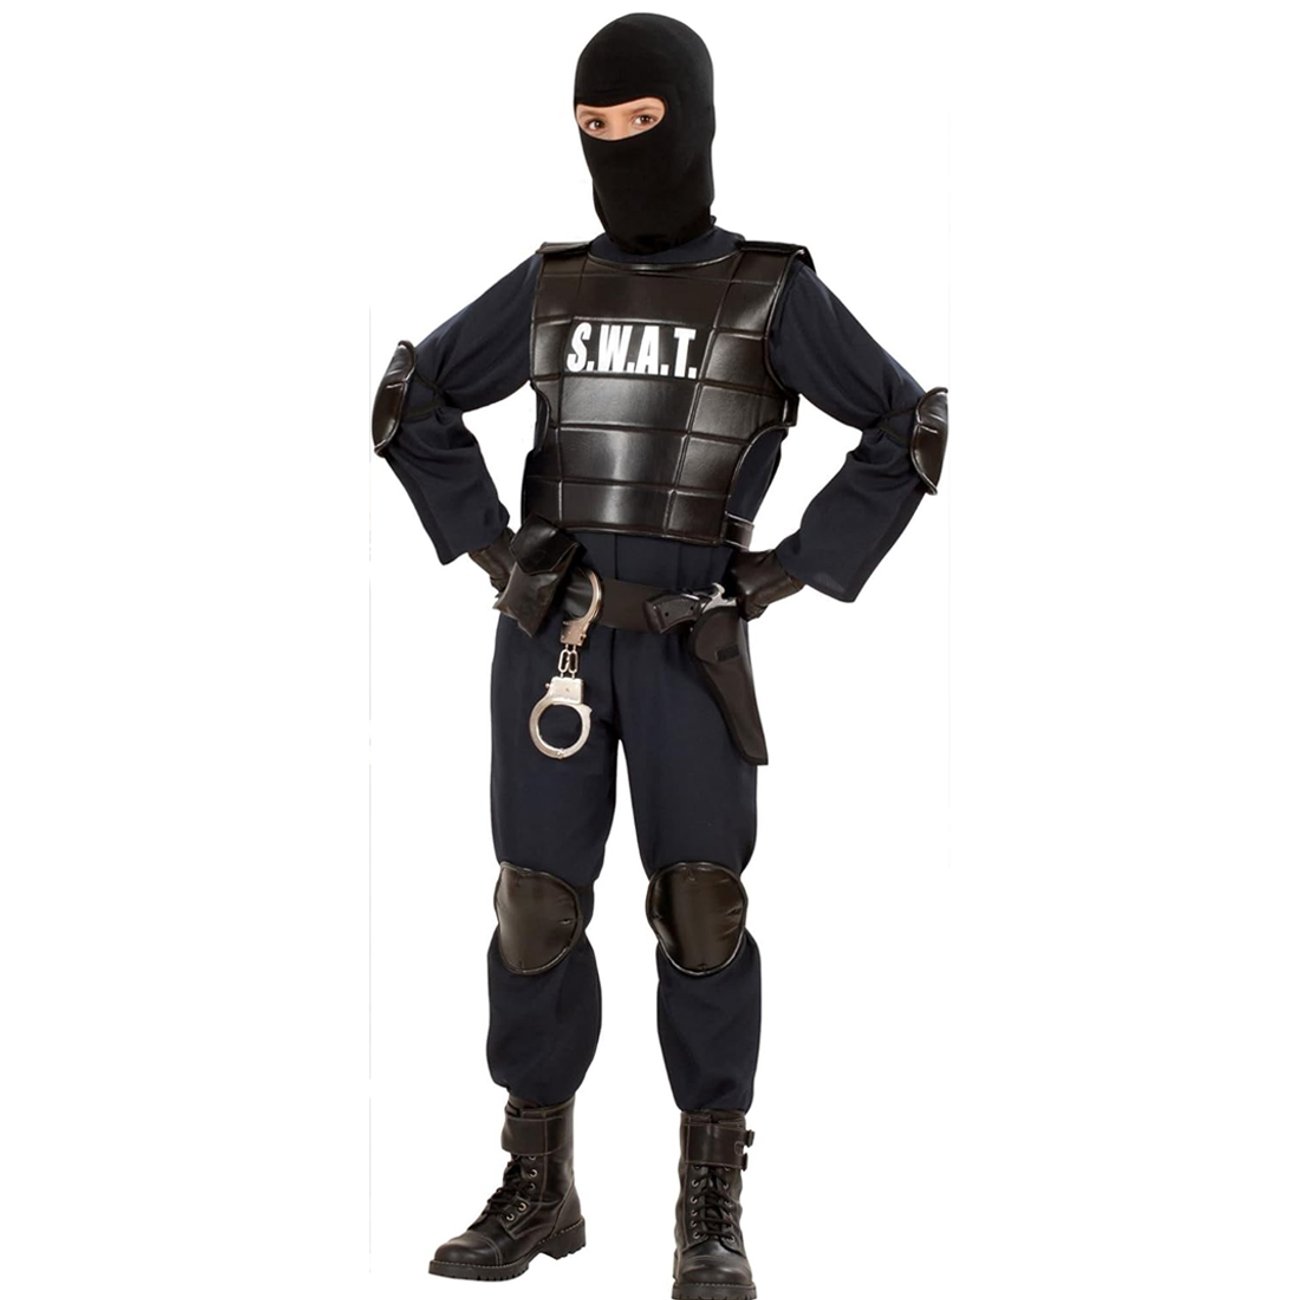 SWAT Kostüm für Kinder